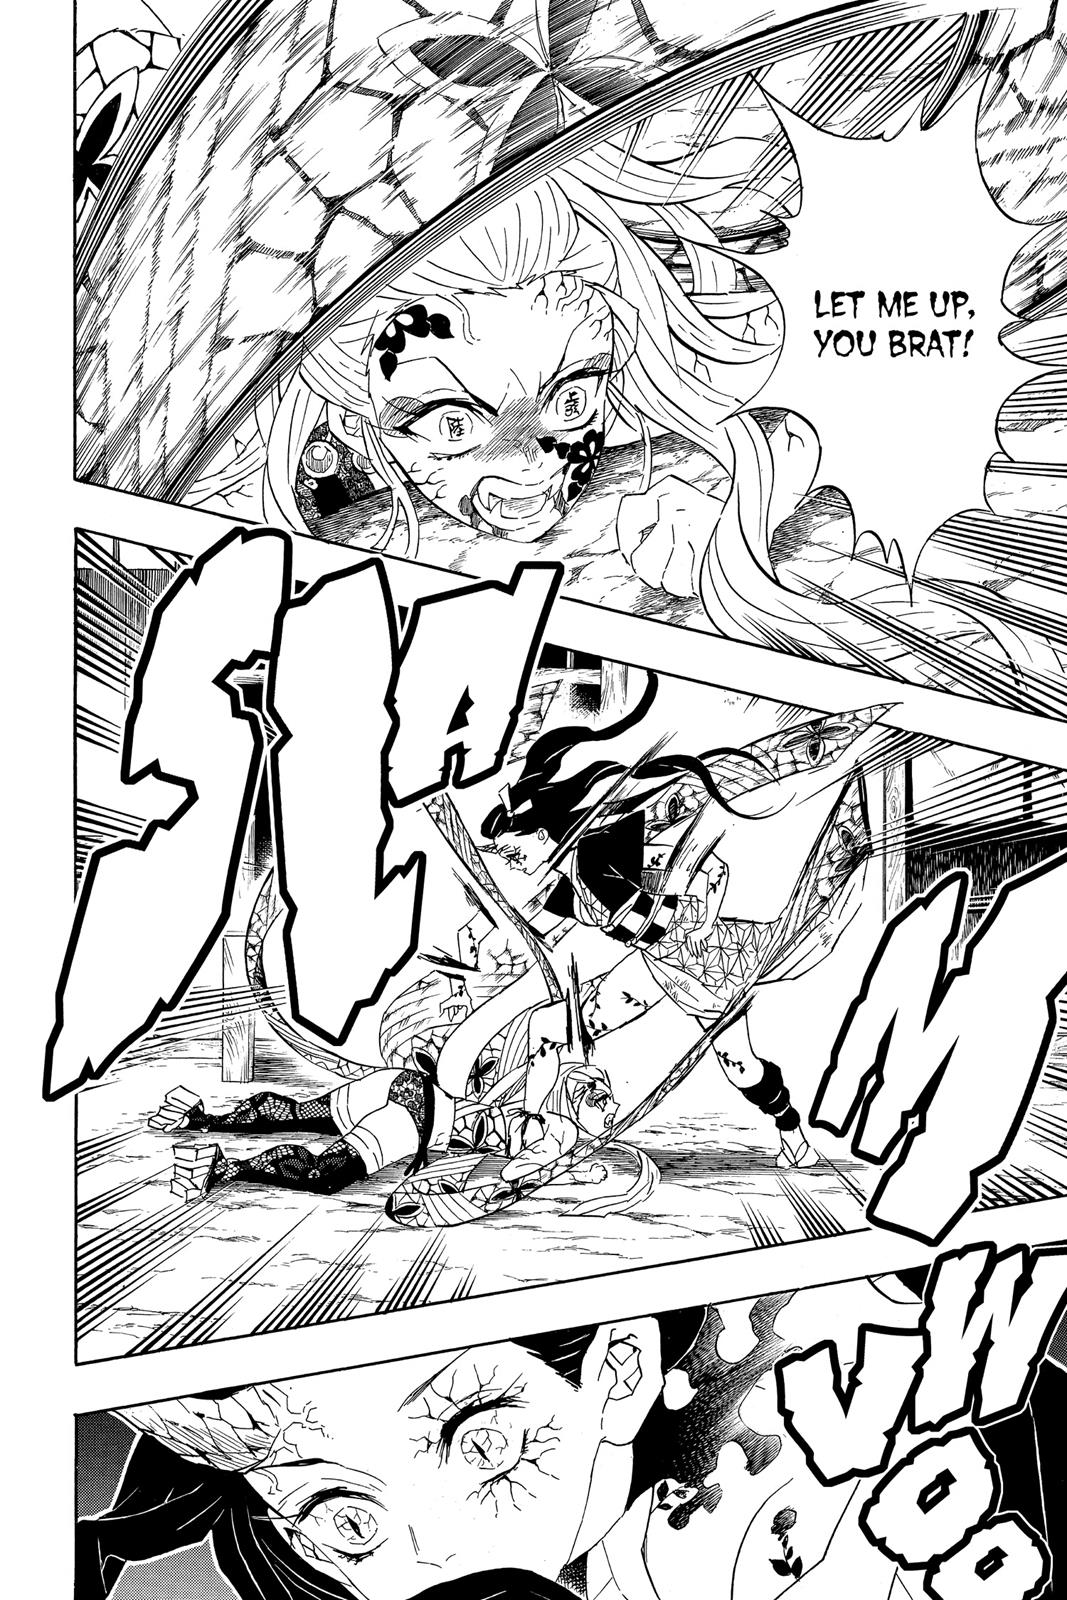 Demon Slayer Manga Manga Chapter - 84 - image 2